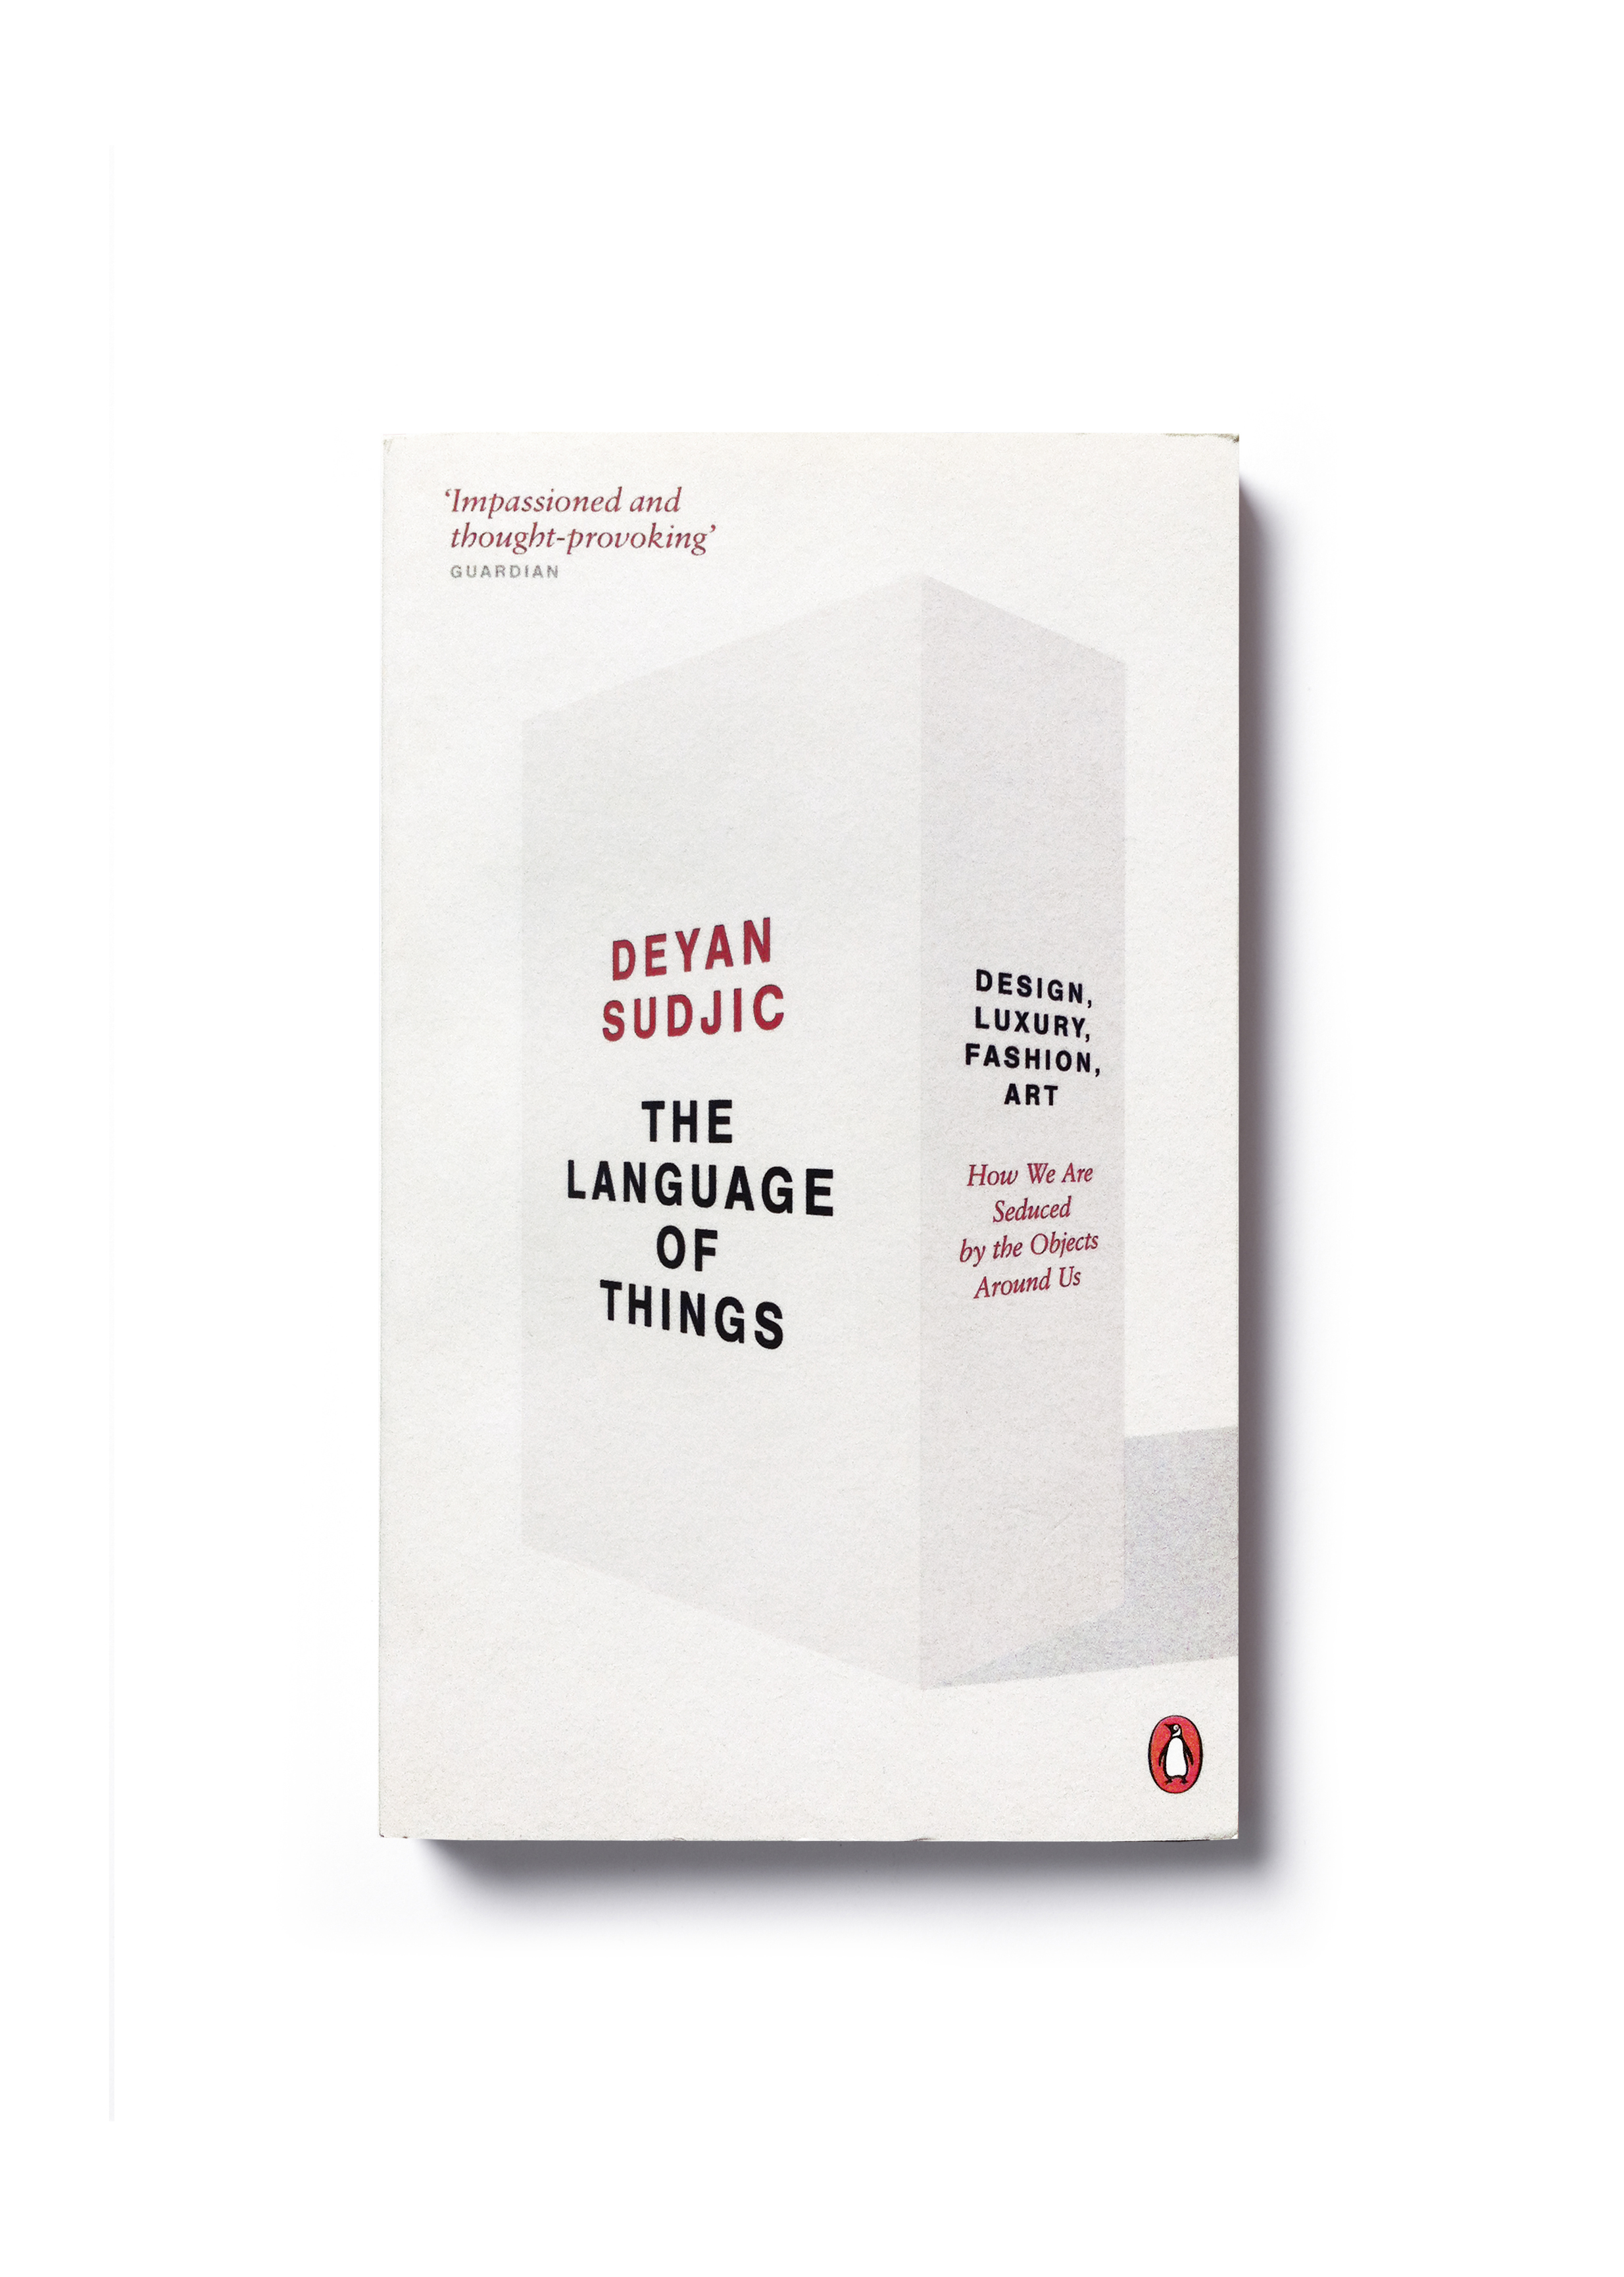  The Language of Things by Deyan Sudjic (paperback) - Design: Jim Stoddart  &nbsp; 